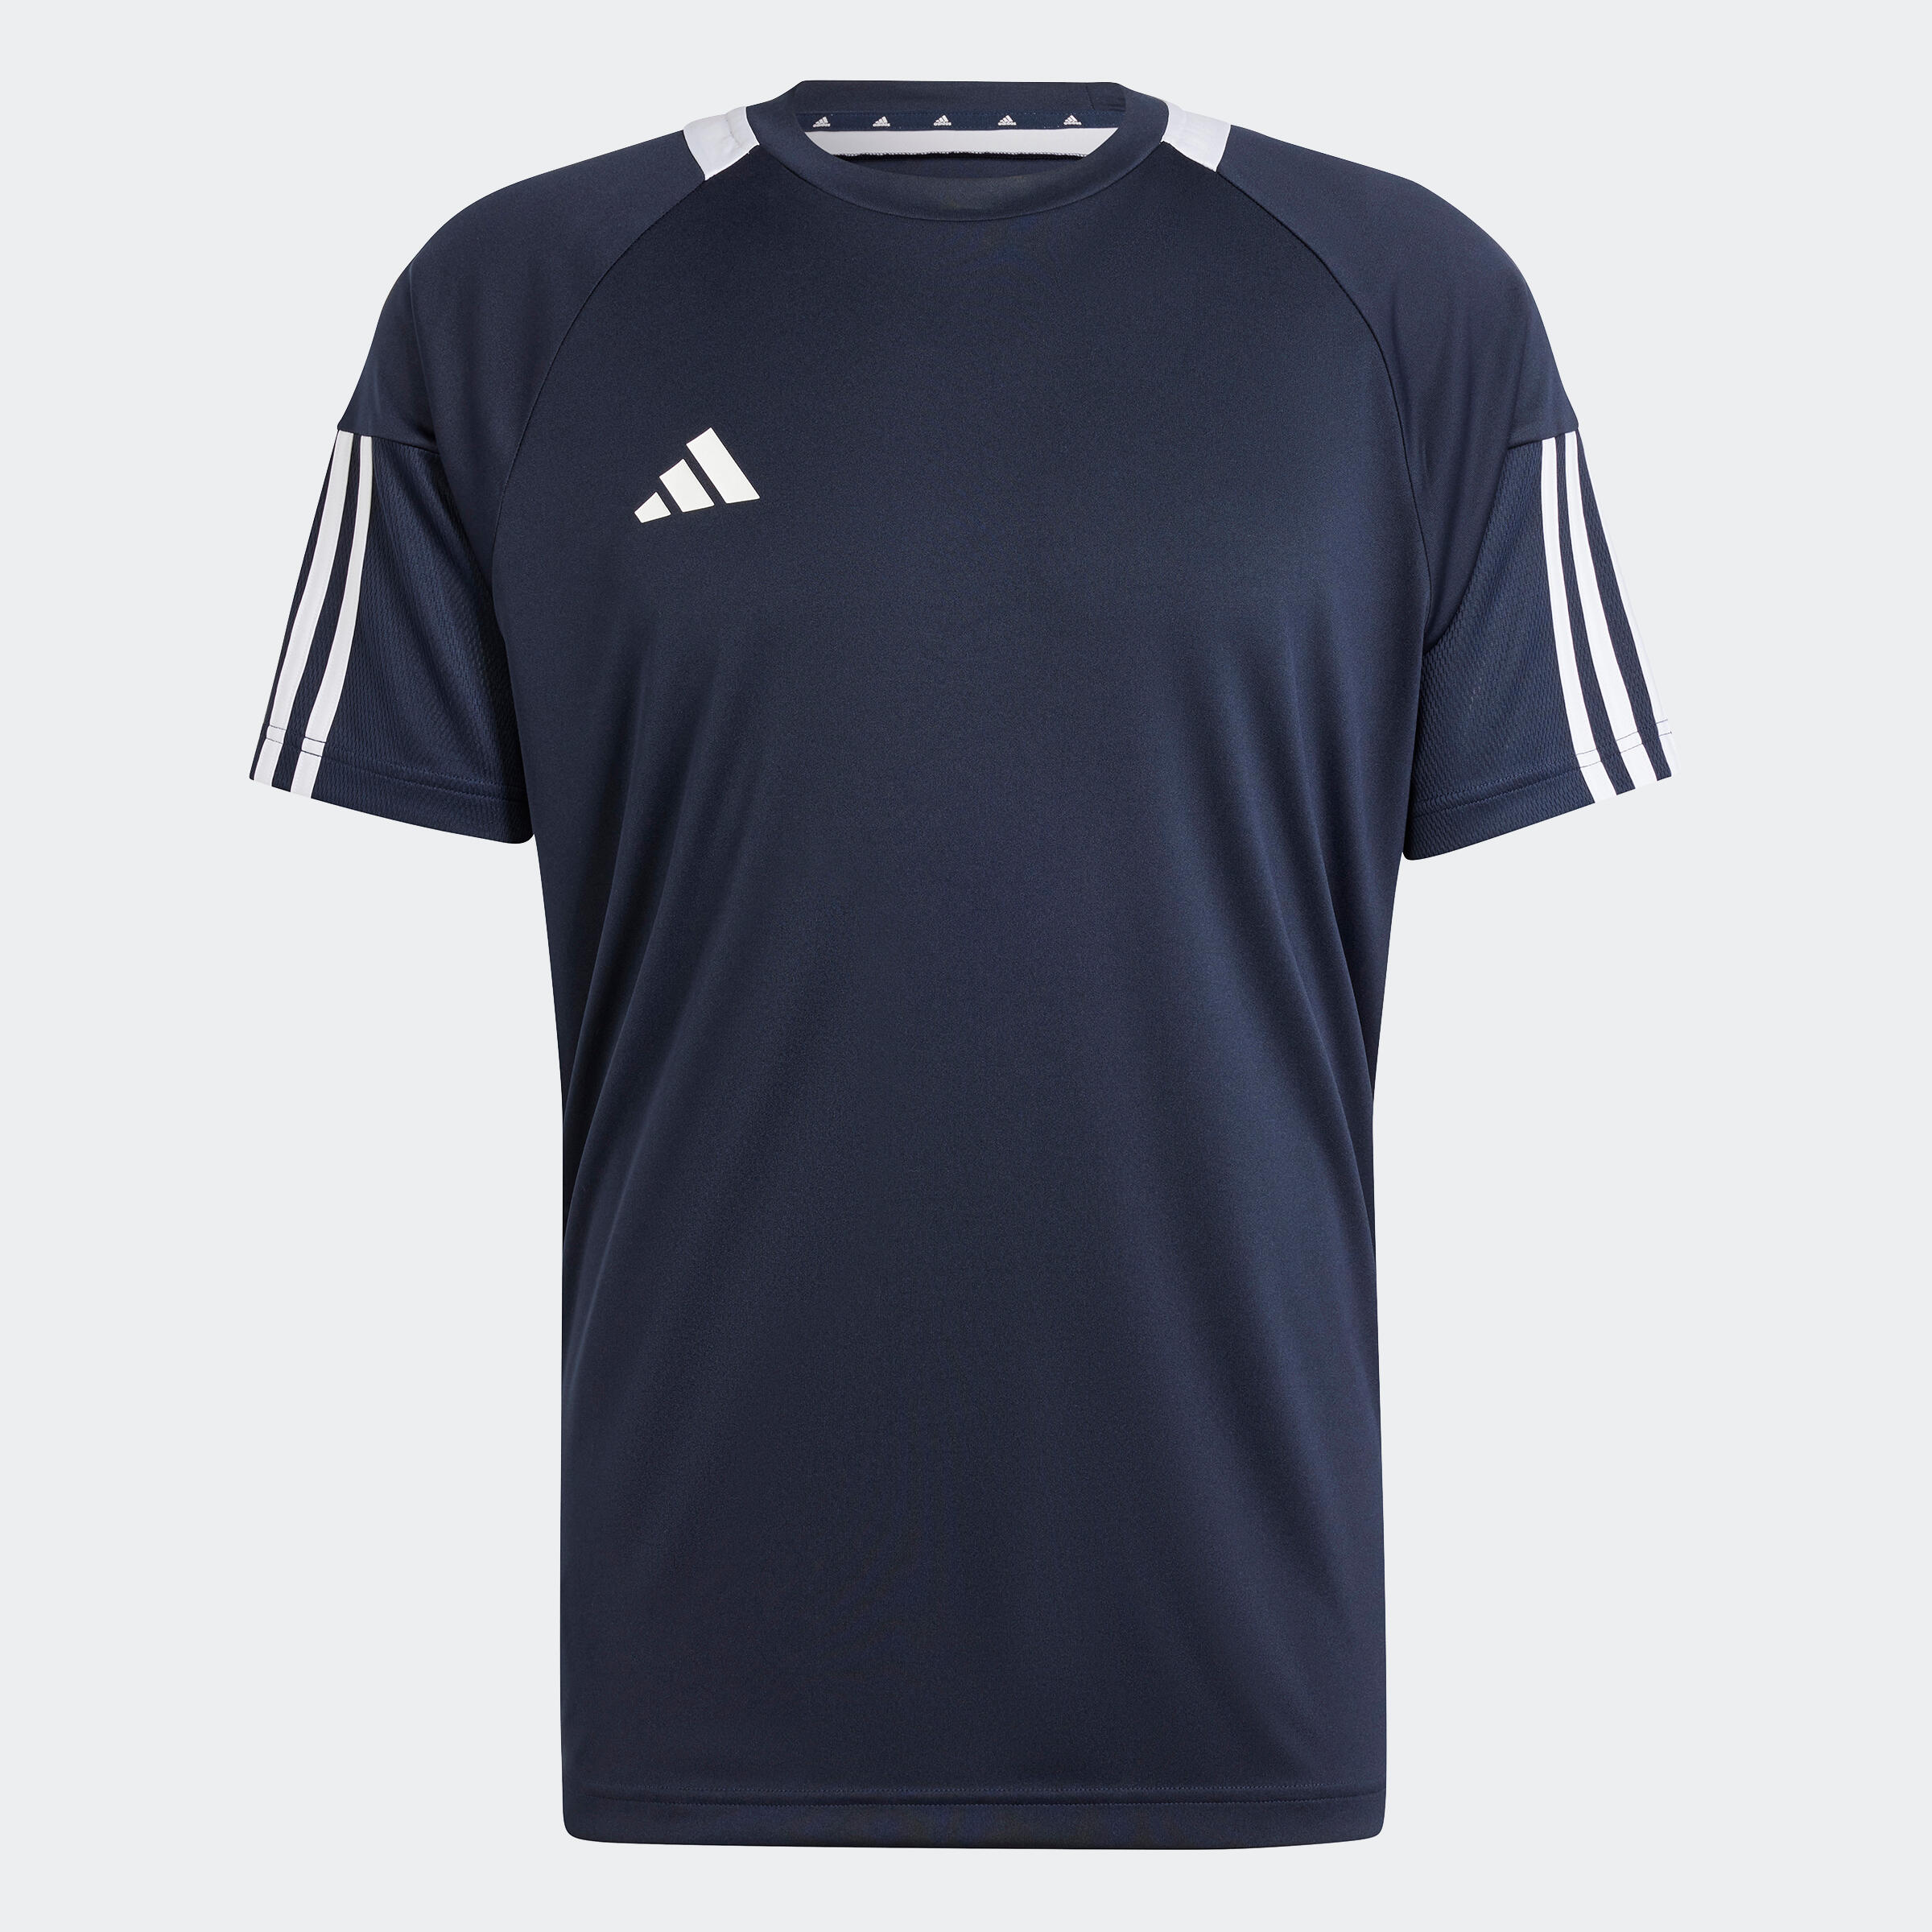 ADIDAS Adult Football Shirt Sereno - Navy Blue